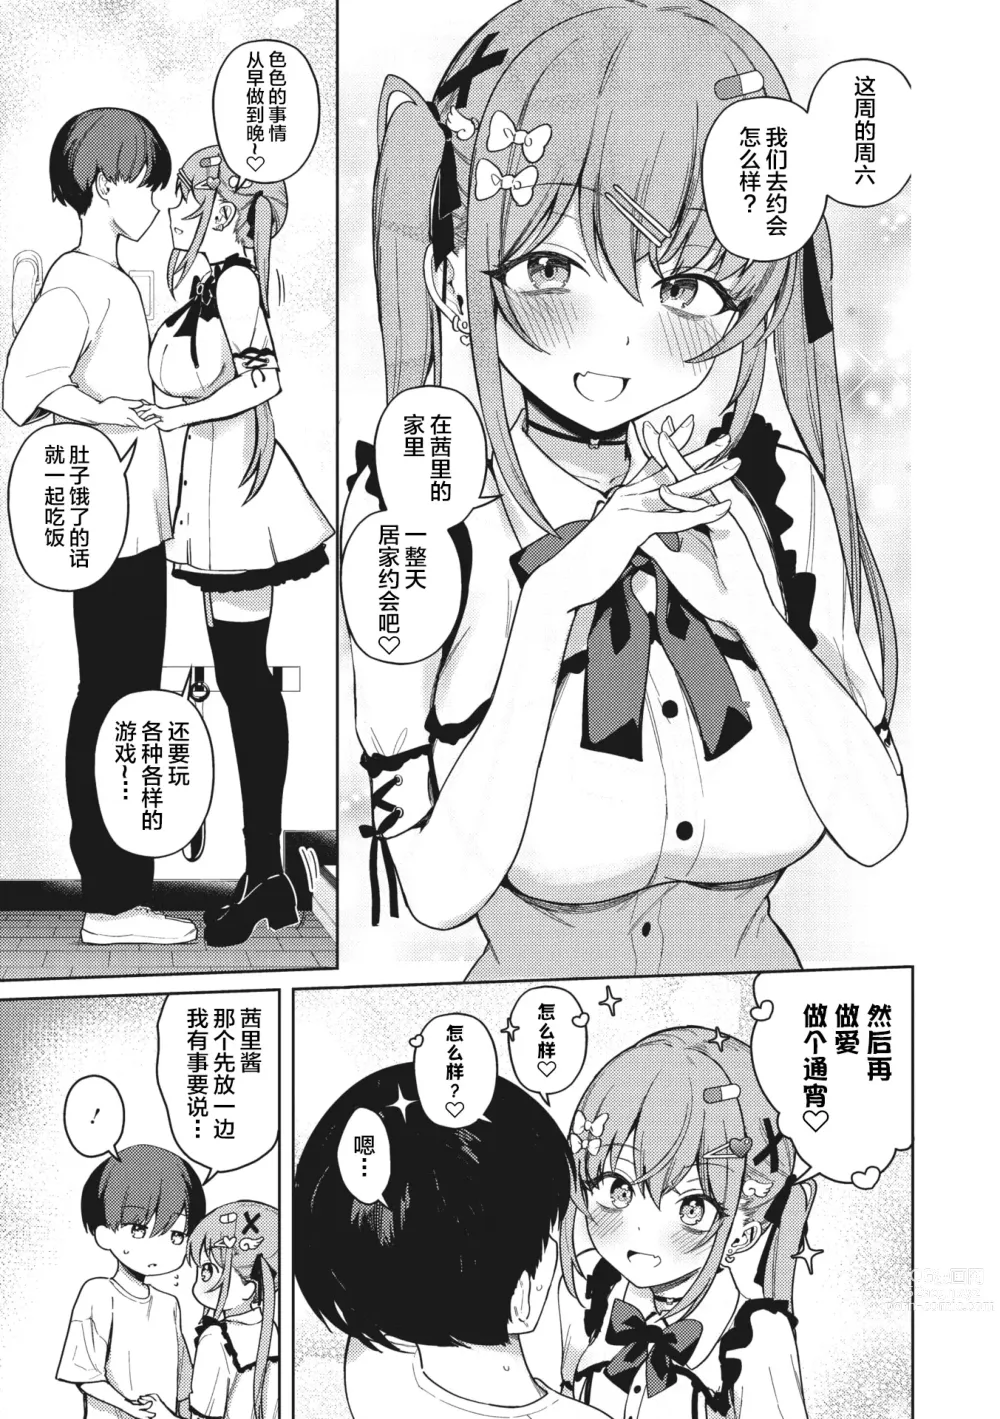 Page 3 of manga Motto! Best Match Mine Girl